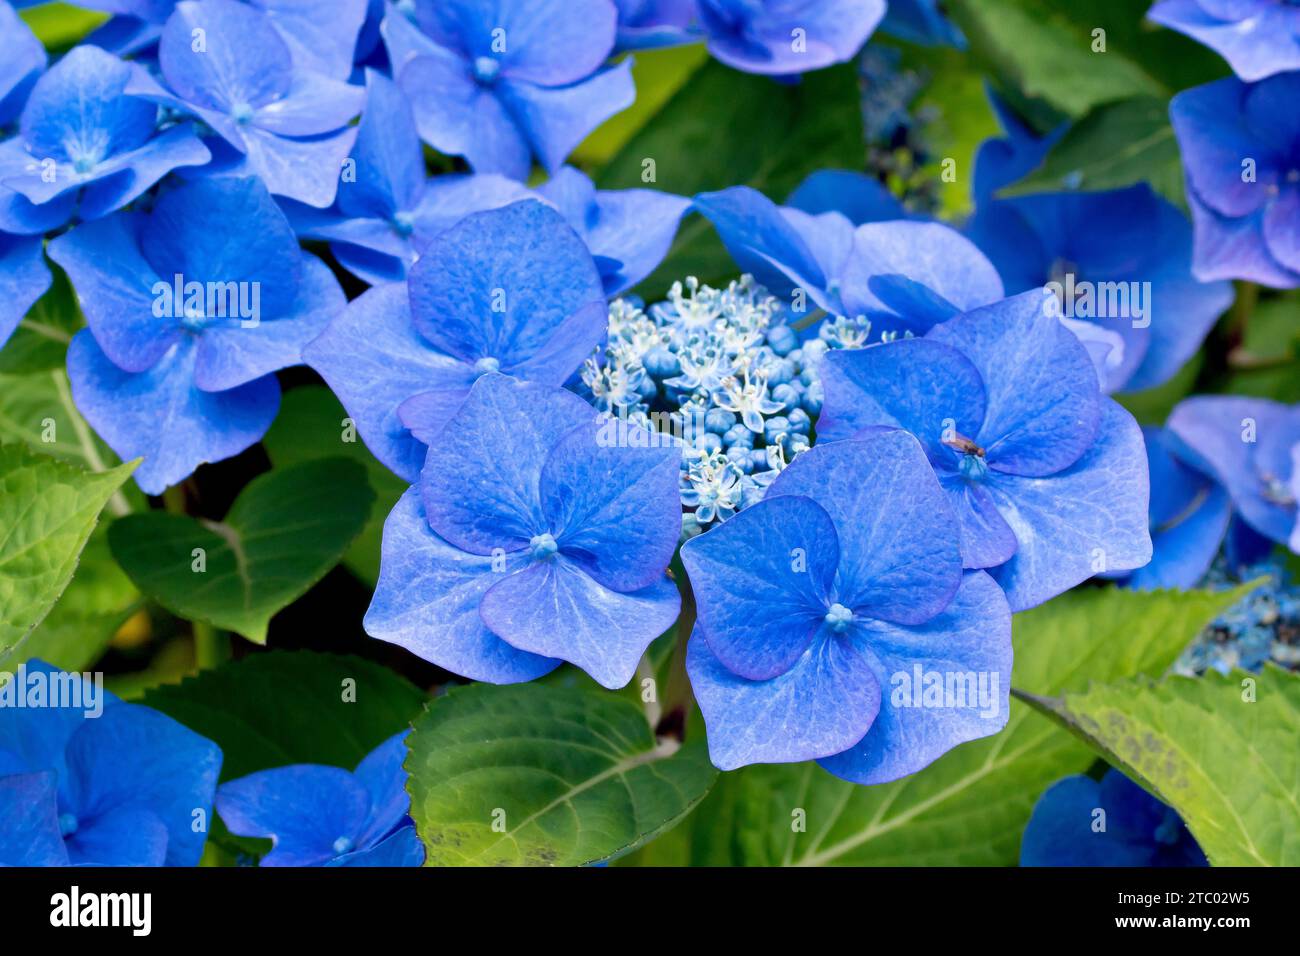 Blue Lace Cap Hydrangea, gros plan se concentrant sur une seule tête de fleur de l'arbuste montrant les grandes fleurs extérieures bleues et les fleurs intérieures plus petites. Banque D'Images